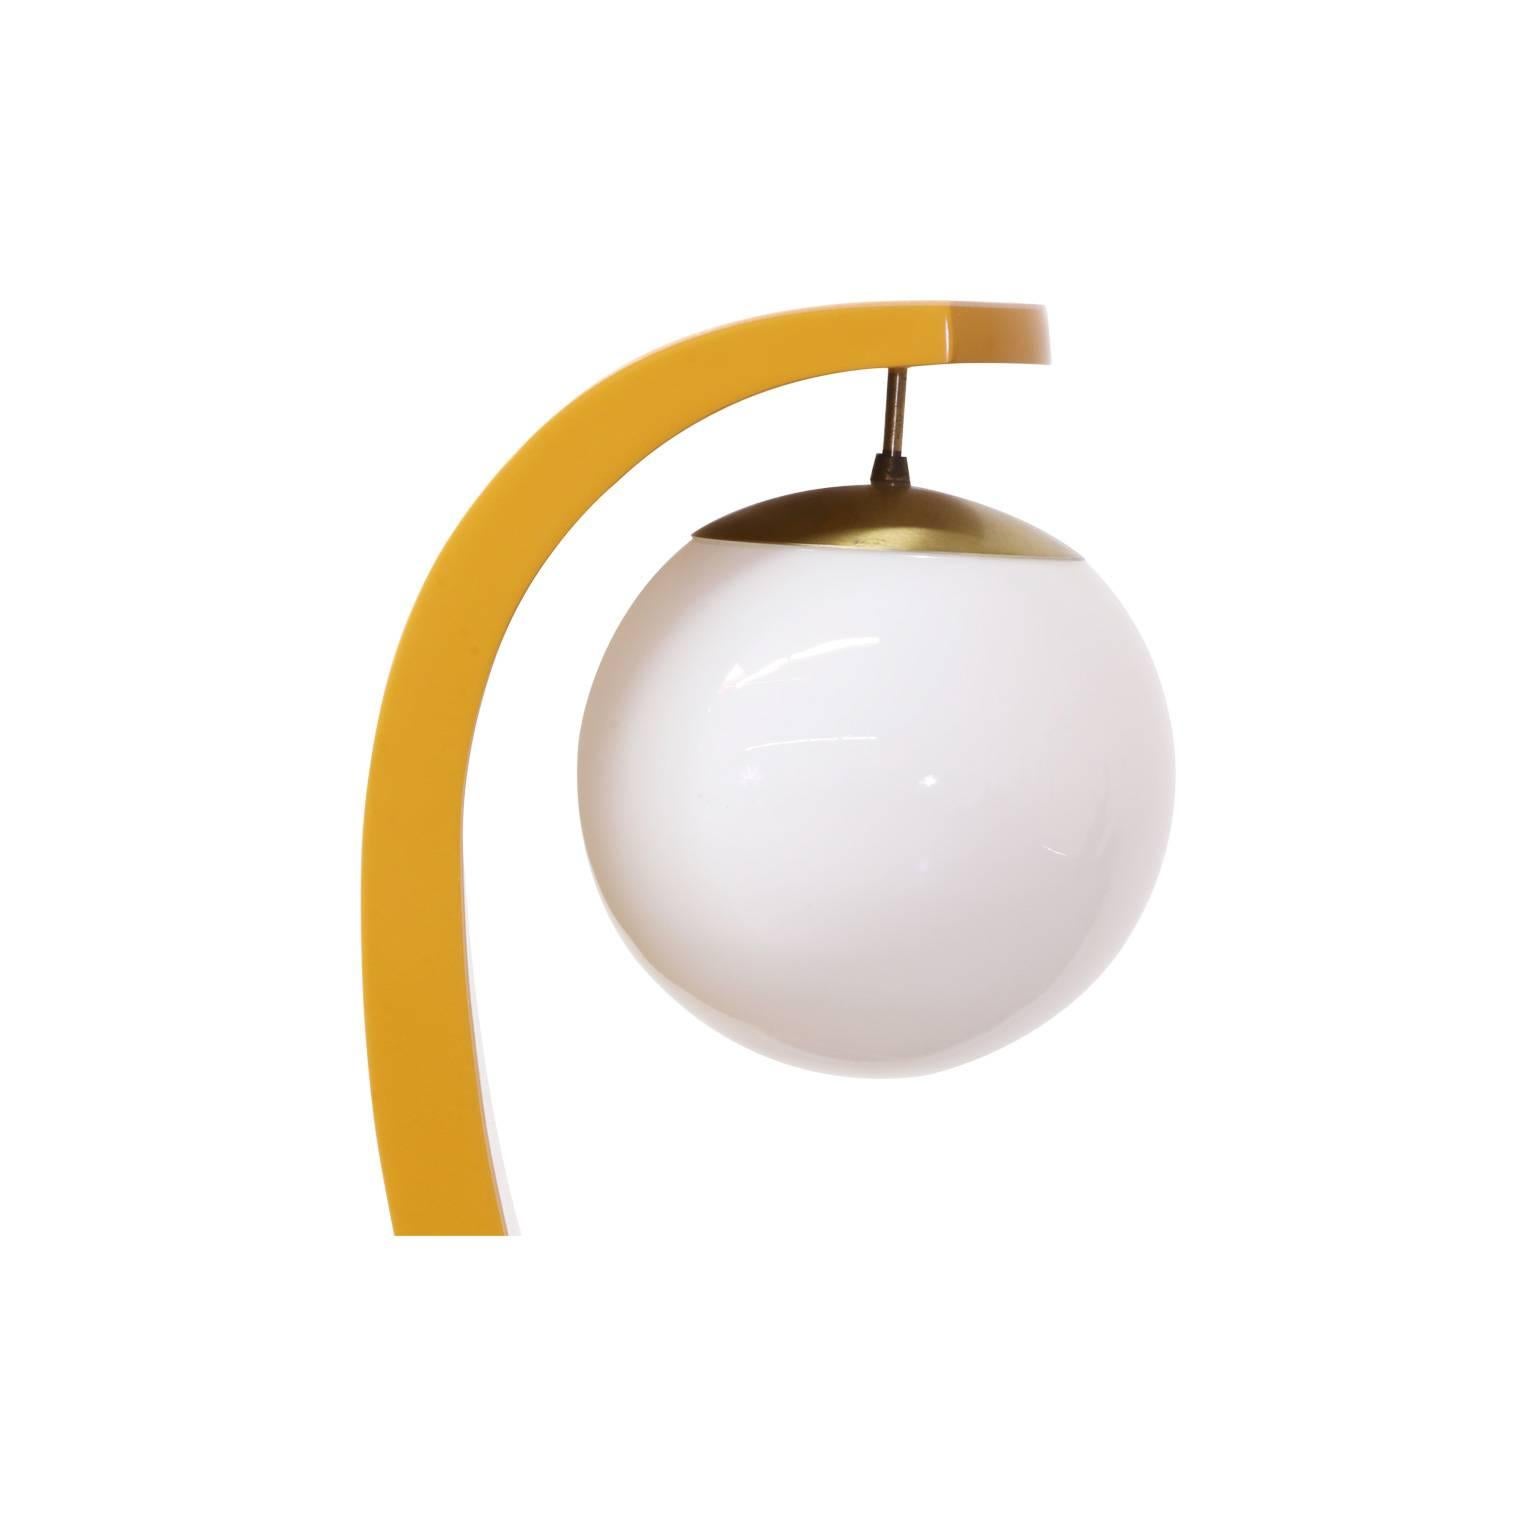 American Midcentury “Serpentine” Floor Lamp by Modeline